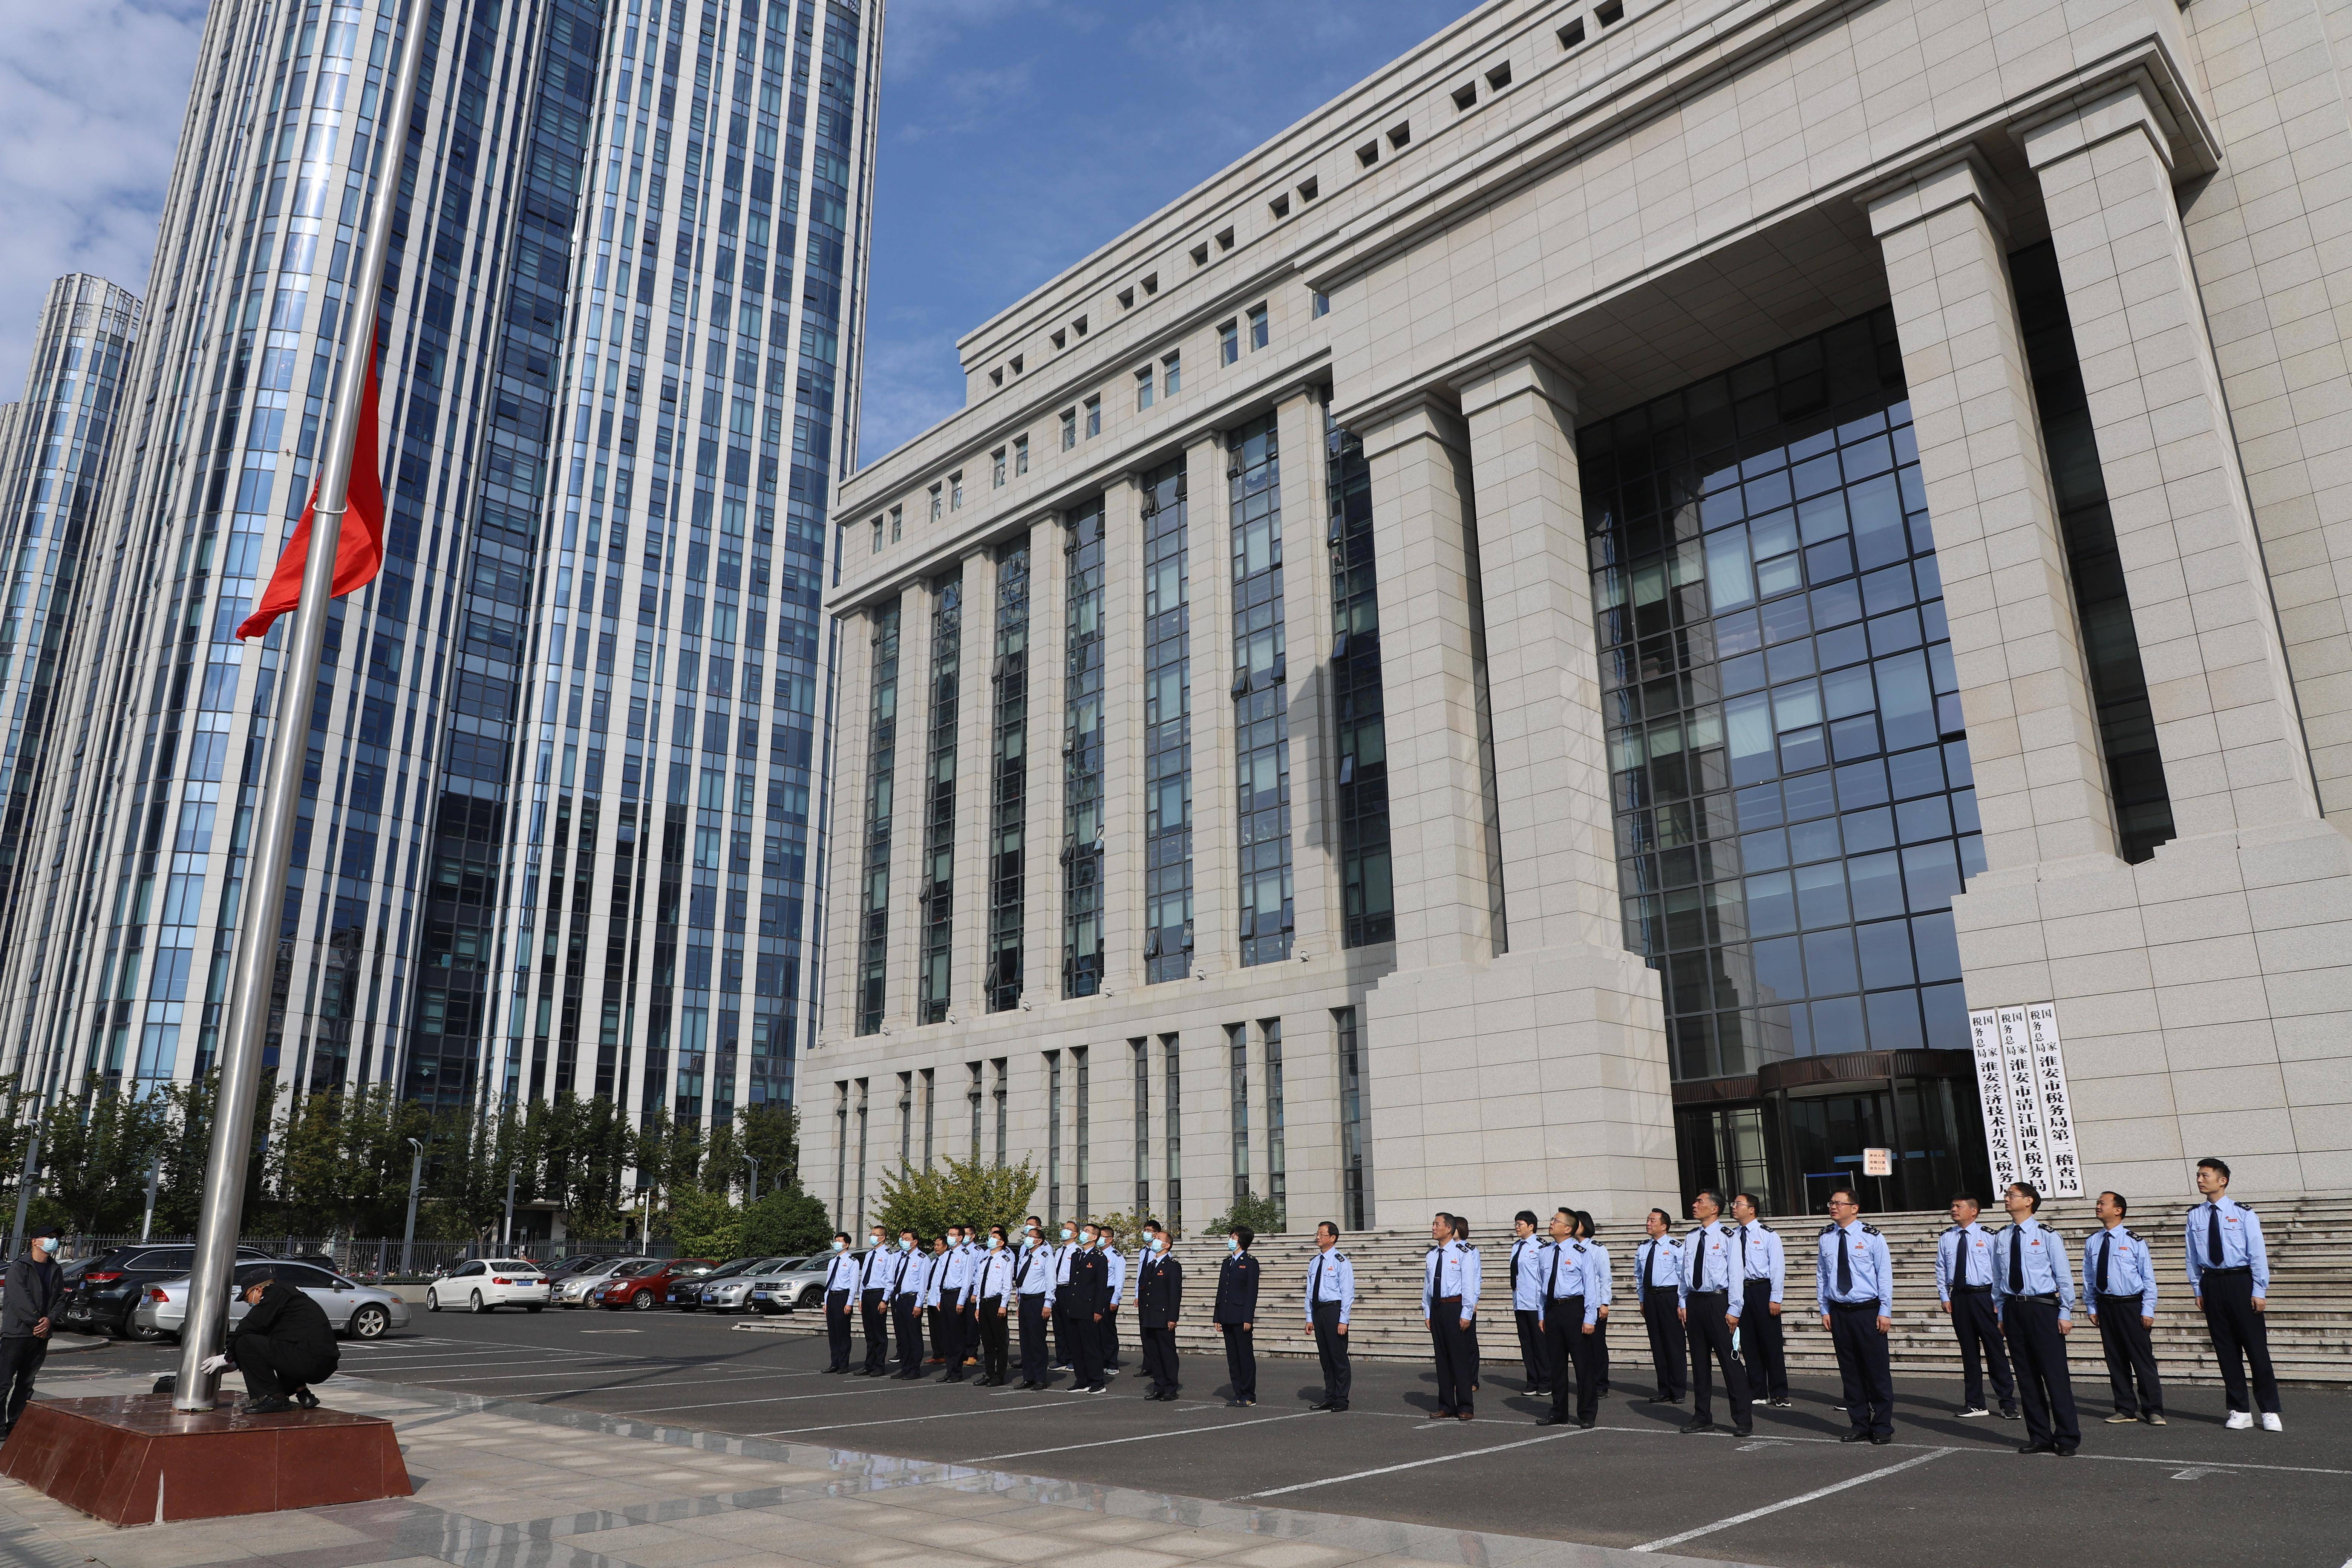 10月8日上午,国家税务总局淮安经济技术开发区税务局隆重举行升国旗